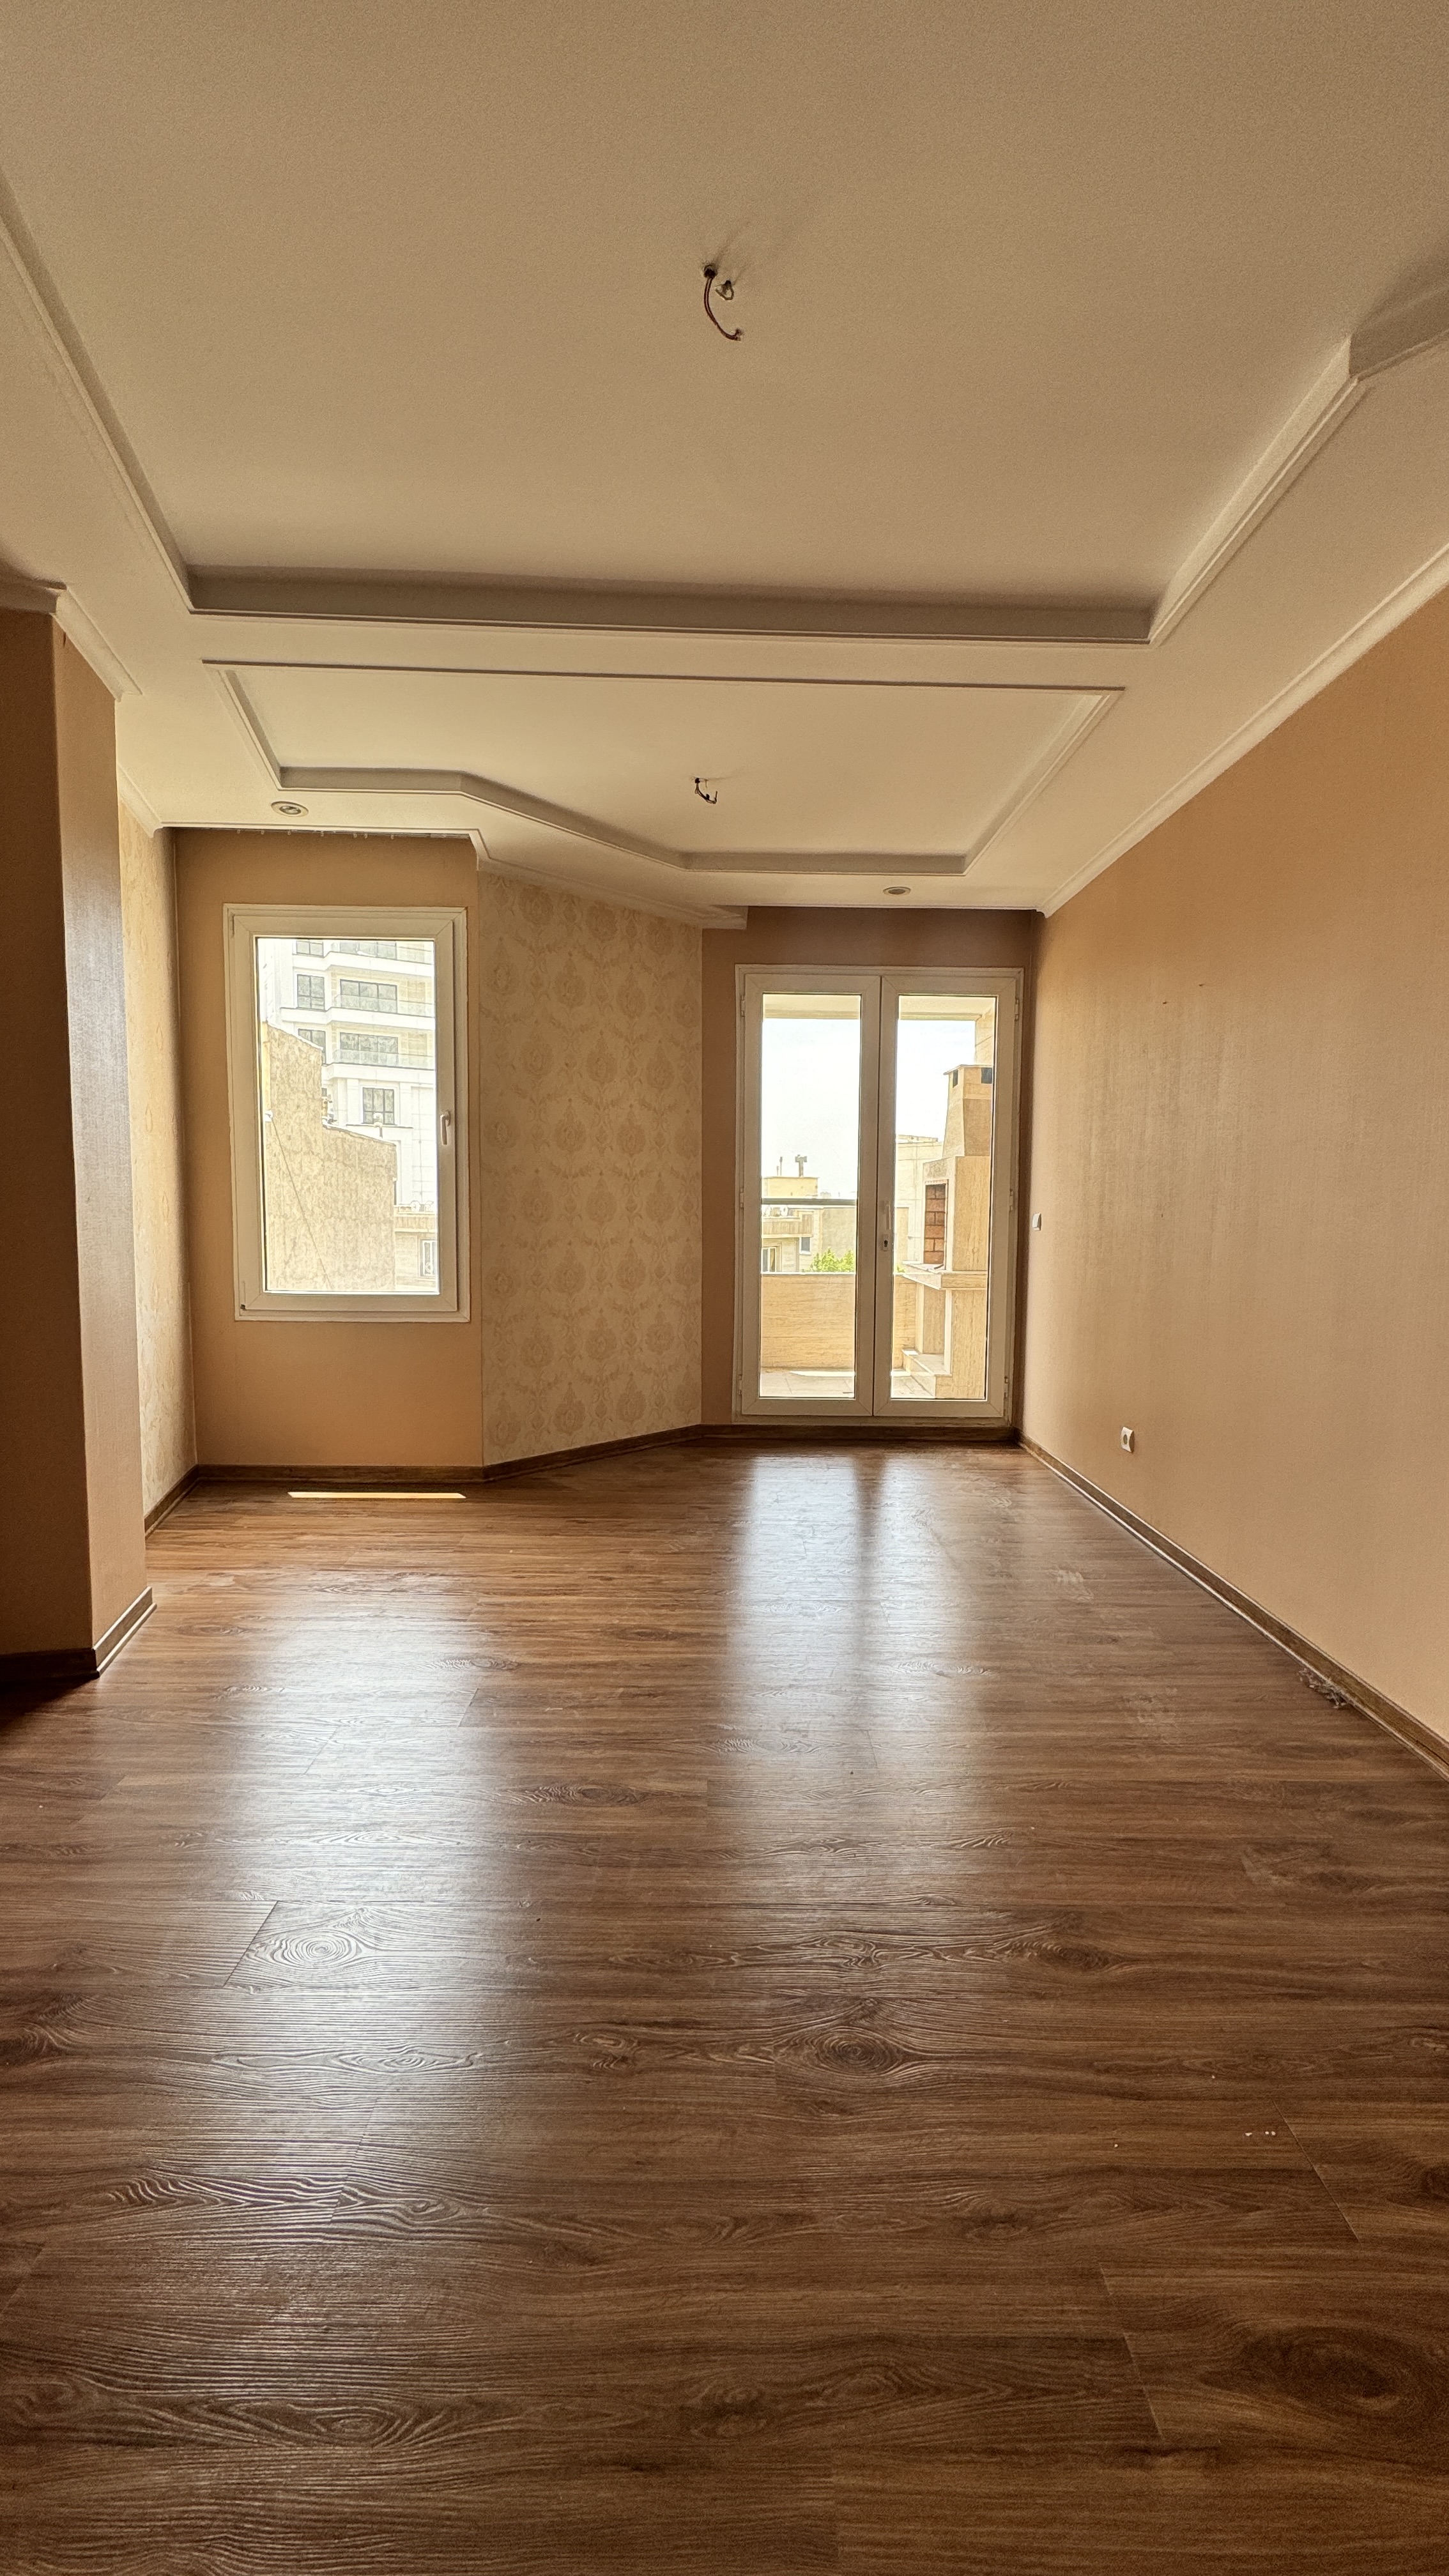 فروش آپارتمان 175 متر نیاوران سه خواب شمال کاخ